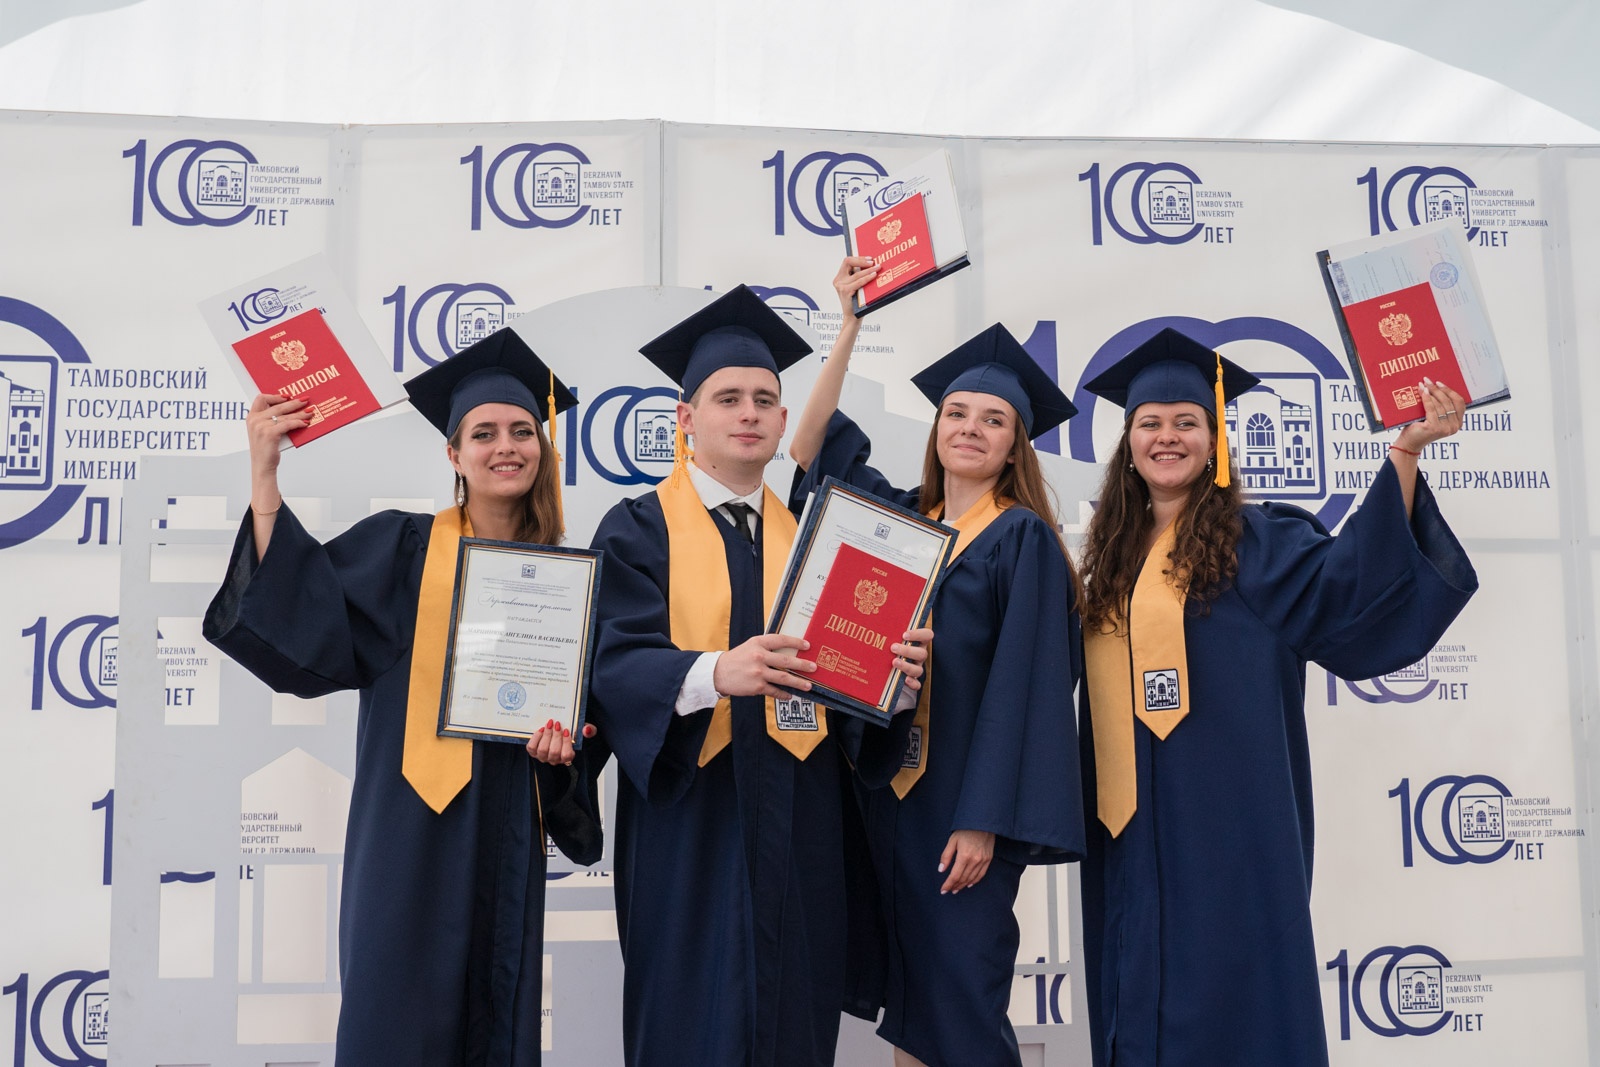 Более 2500 выпускников получили дипломы Державинского университета фото анонса